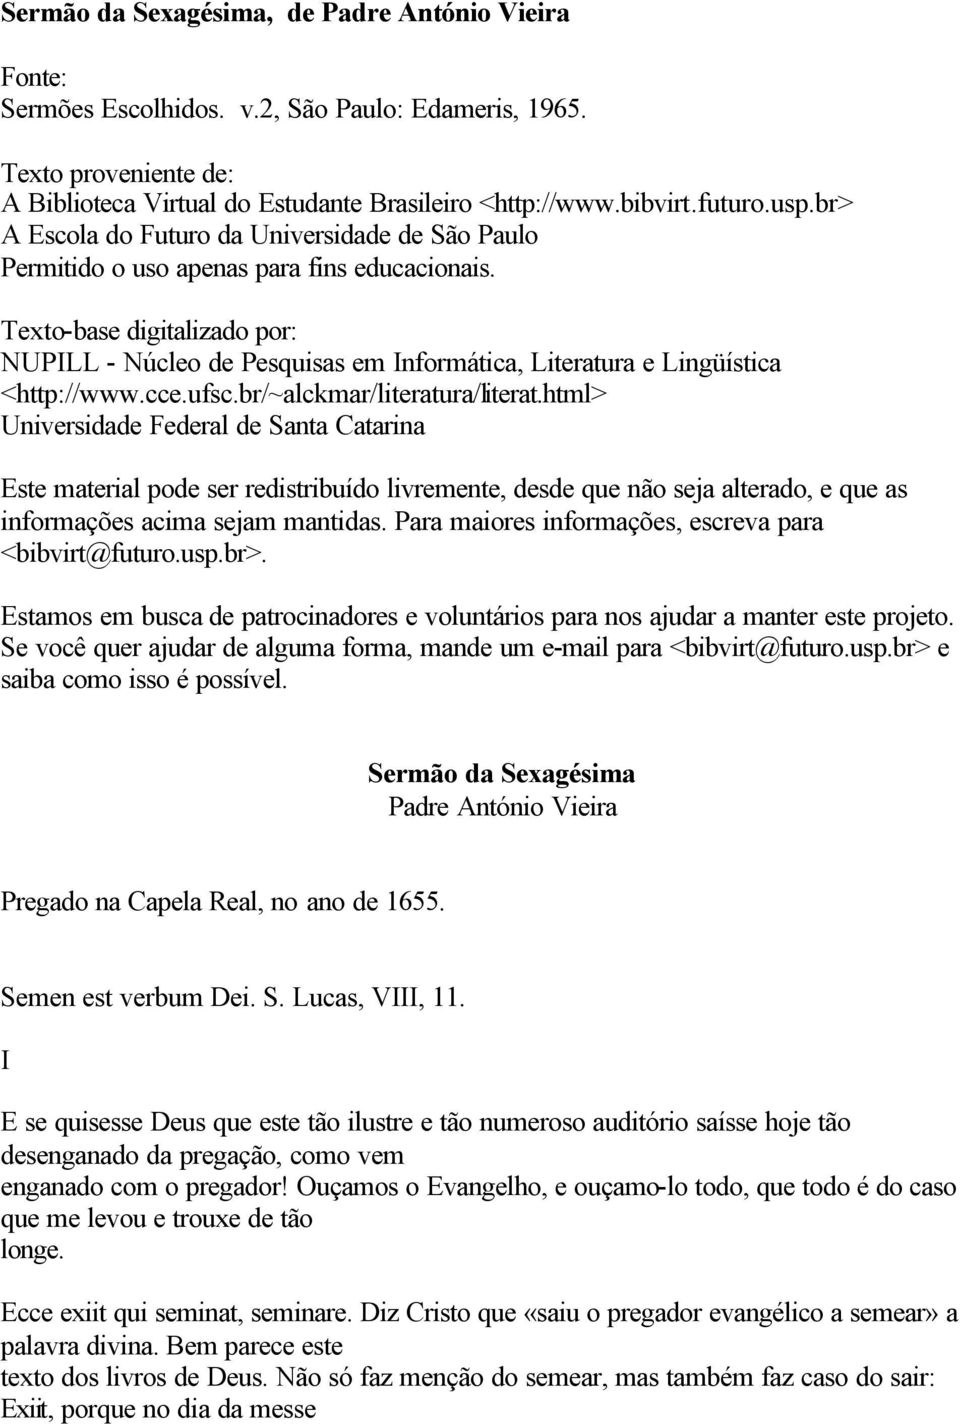 Texto-base digitalizado por: NUPILL - Núcleo de Pesquisas em Informática, Literatura e Lingüística <http://www.cce.ufsc.br/~alckmar/literatura/literat.